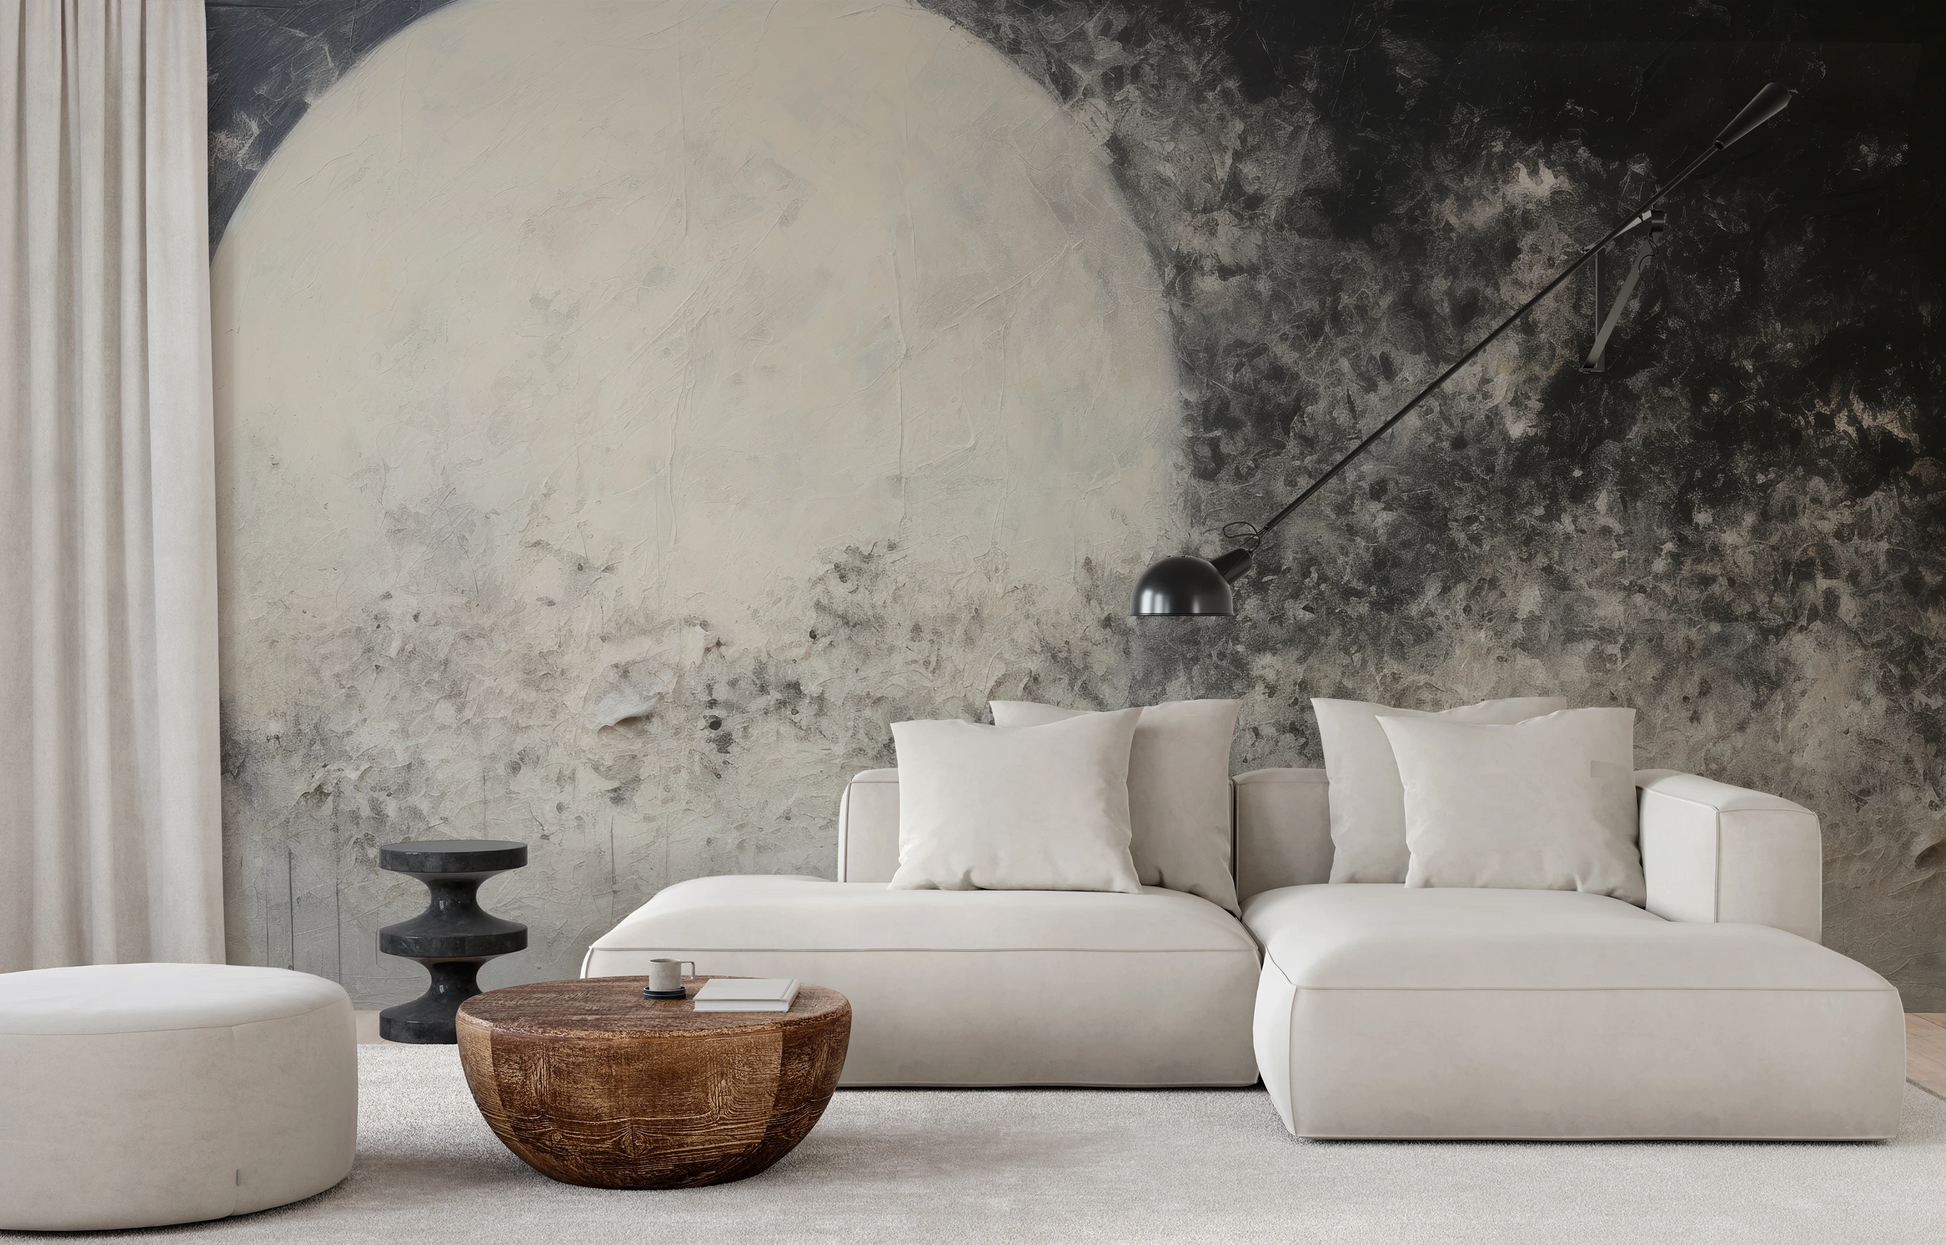 Fototapeta malowana o nazwie Full Moon Calm pokazana w aranżacji wnętrza.